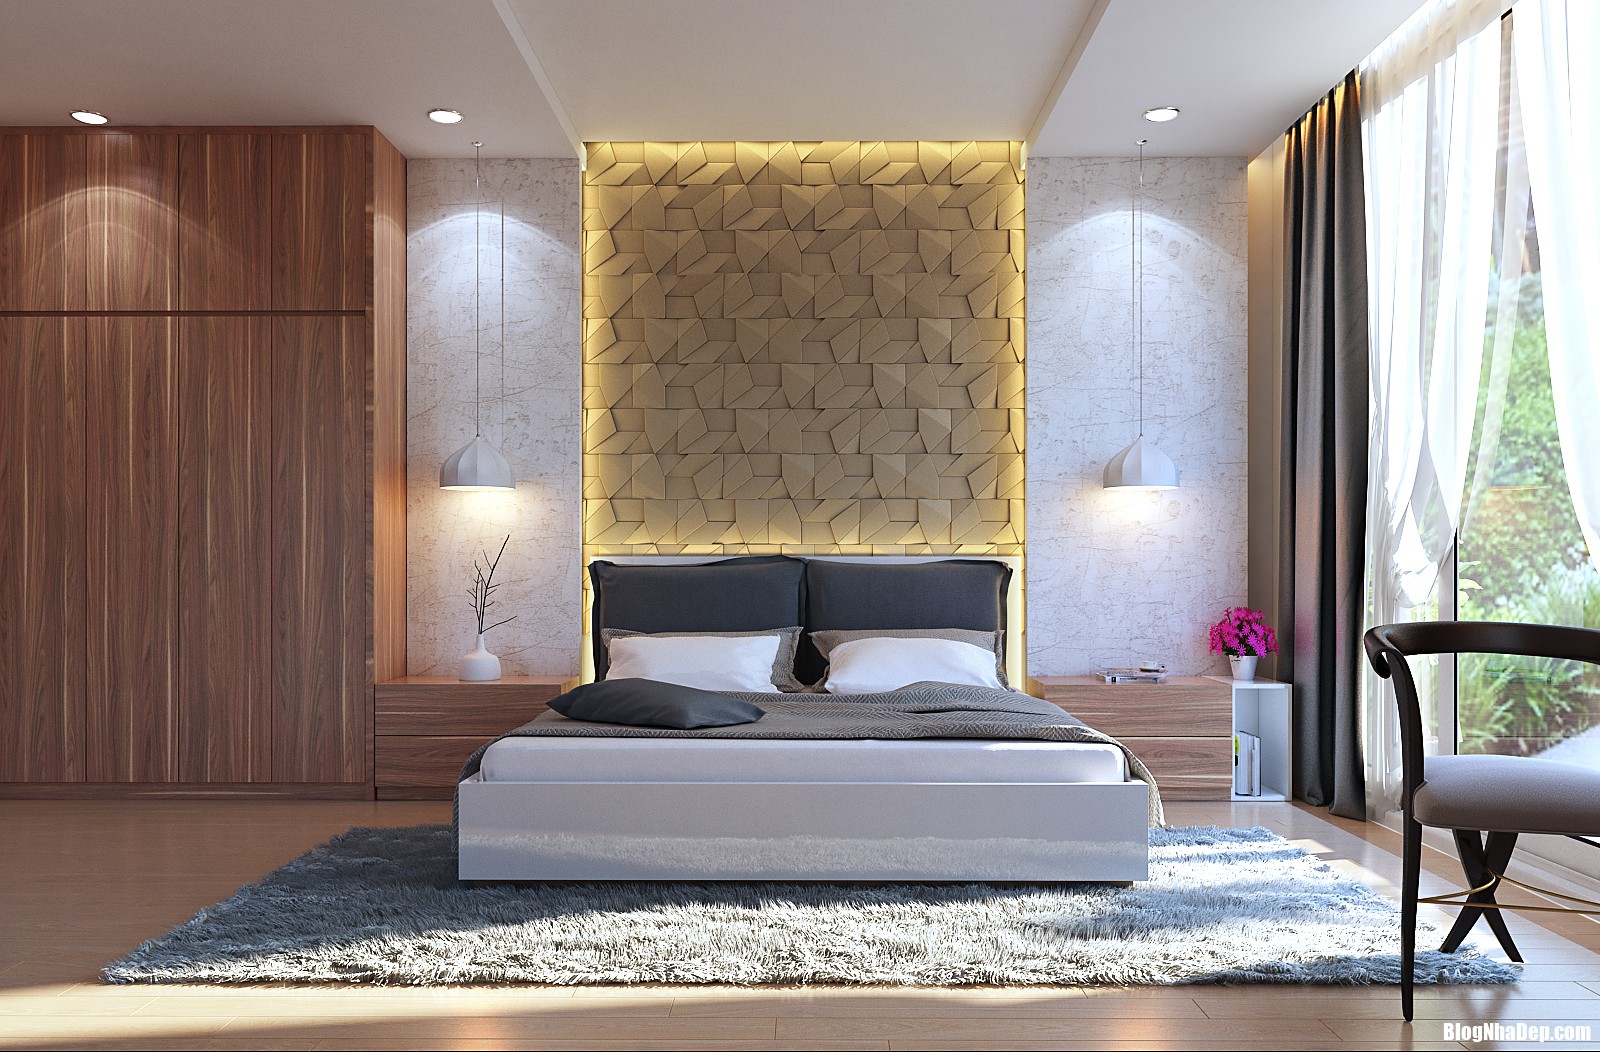 1 Phòng ngủ đẹp nổi bật với những gam màu tươi tắn